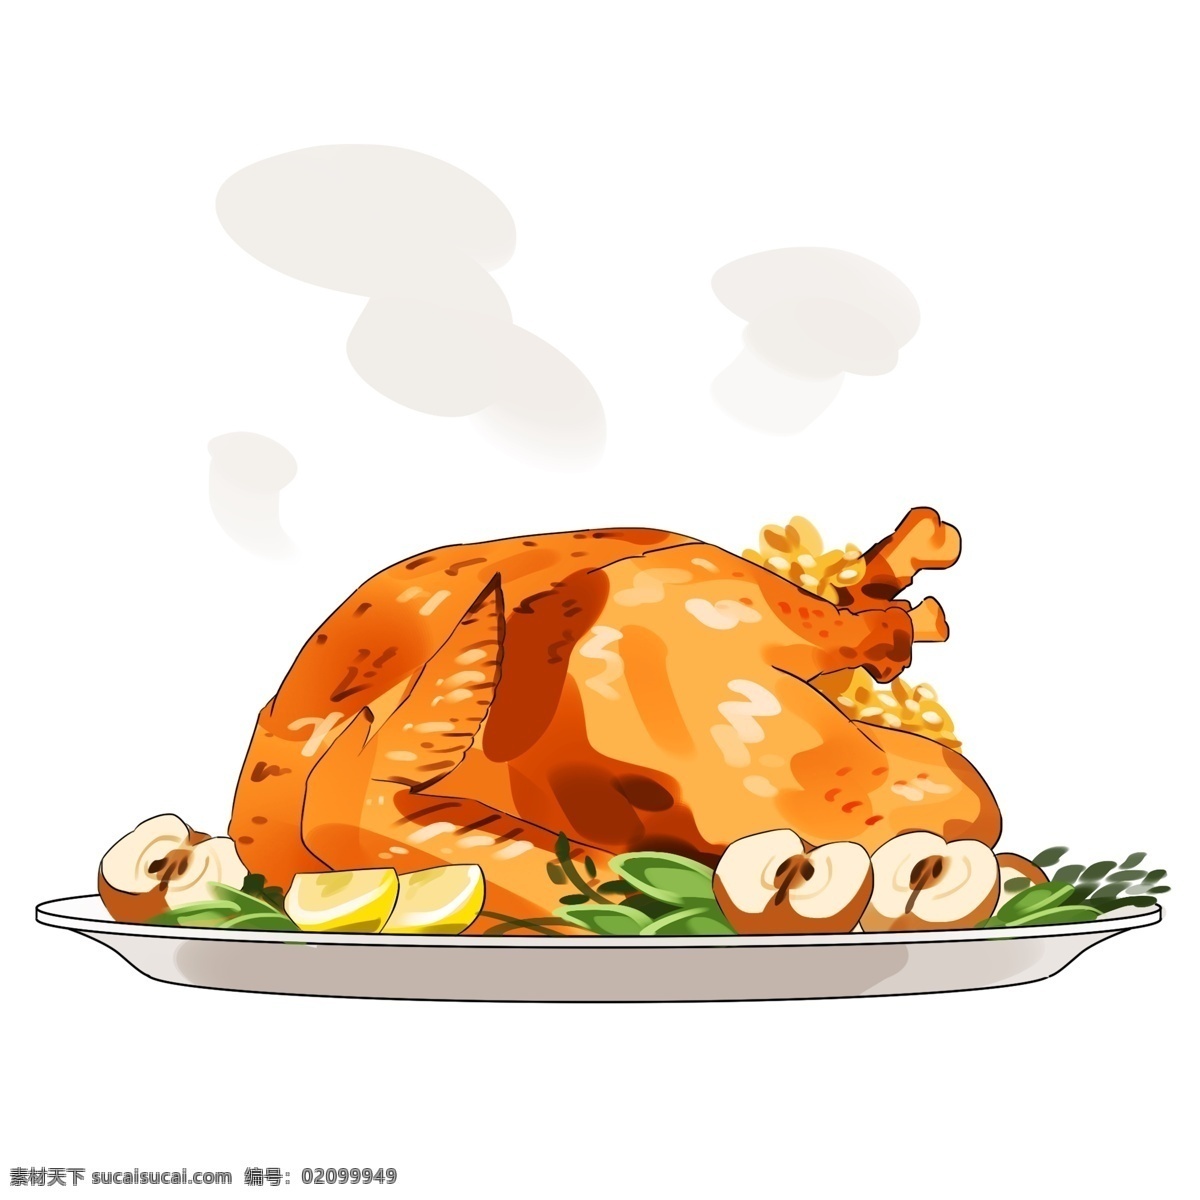 手绘 金黄色 火鸡 插画 烤火 鸡 美味的烤火鸡 诱人的烤火鸡 白色的盘子 手绘插画 创意